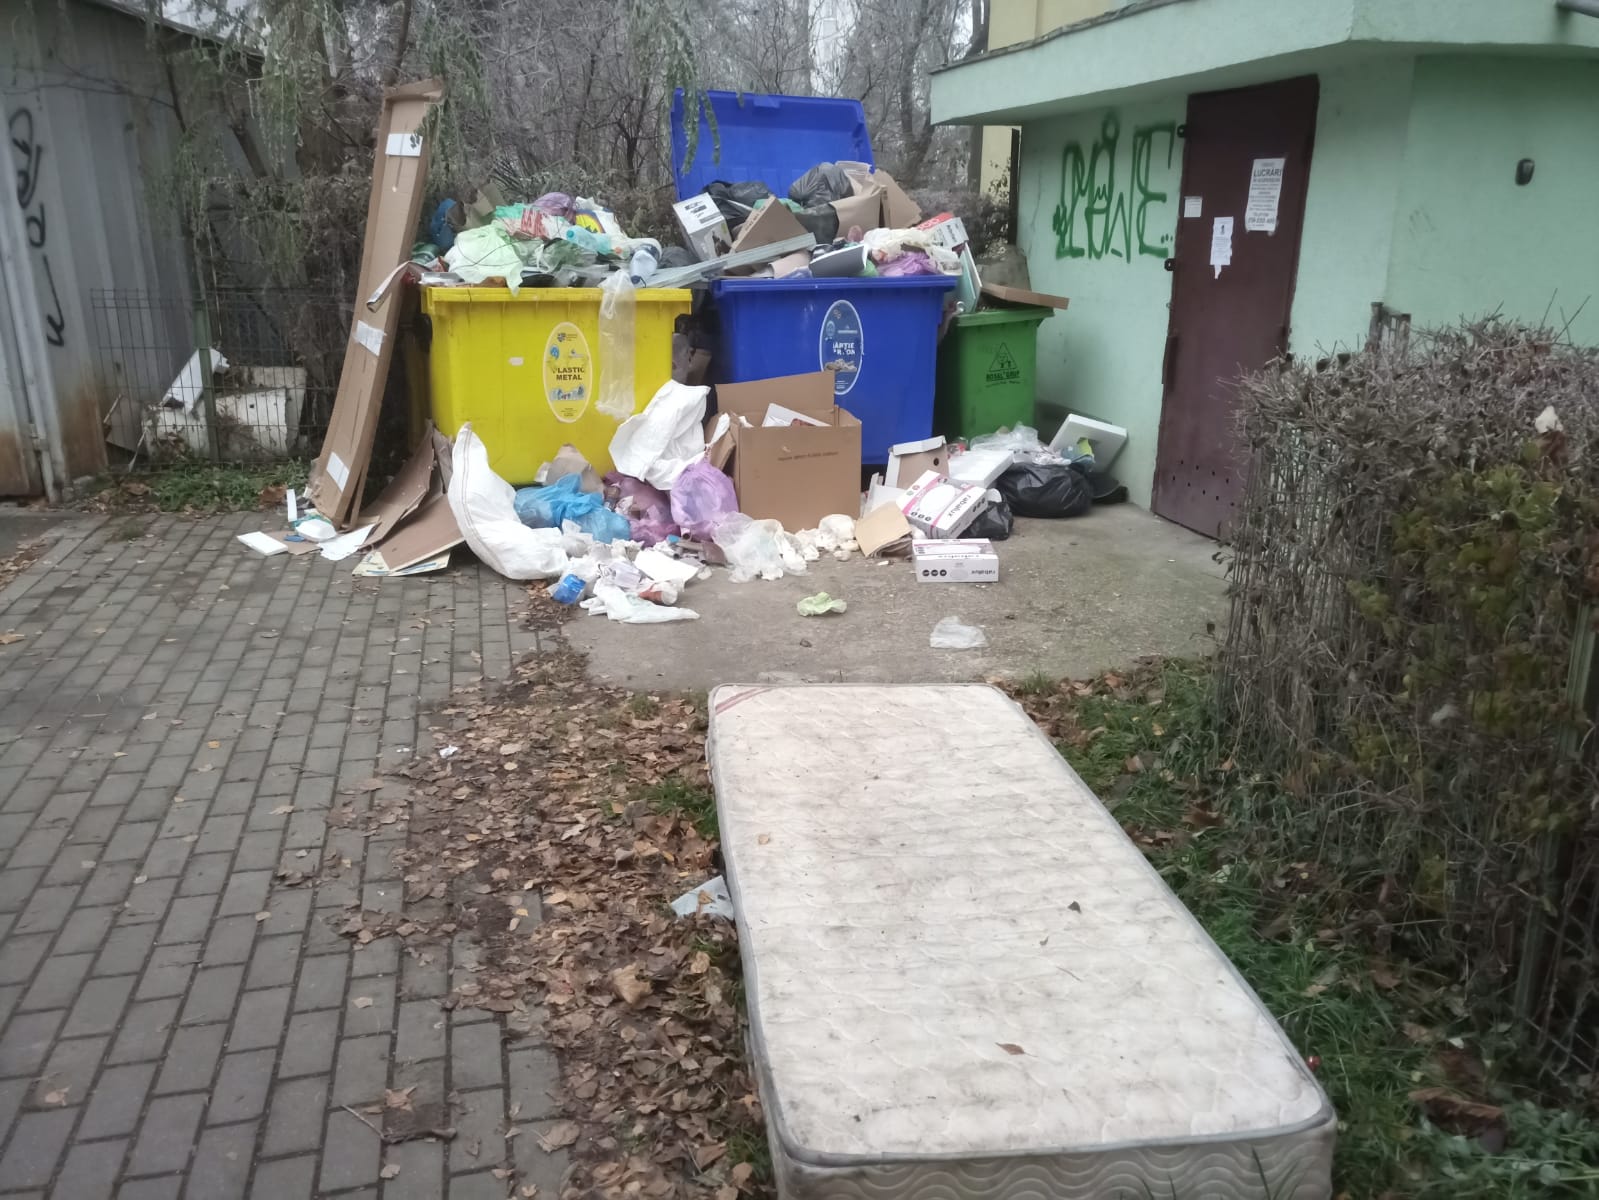 ”Supercom își bate joc de cetățenii din Cluj” - Nu au mai ridicat gunoiul de cinci zile - FOTO